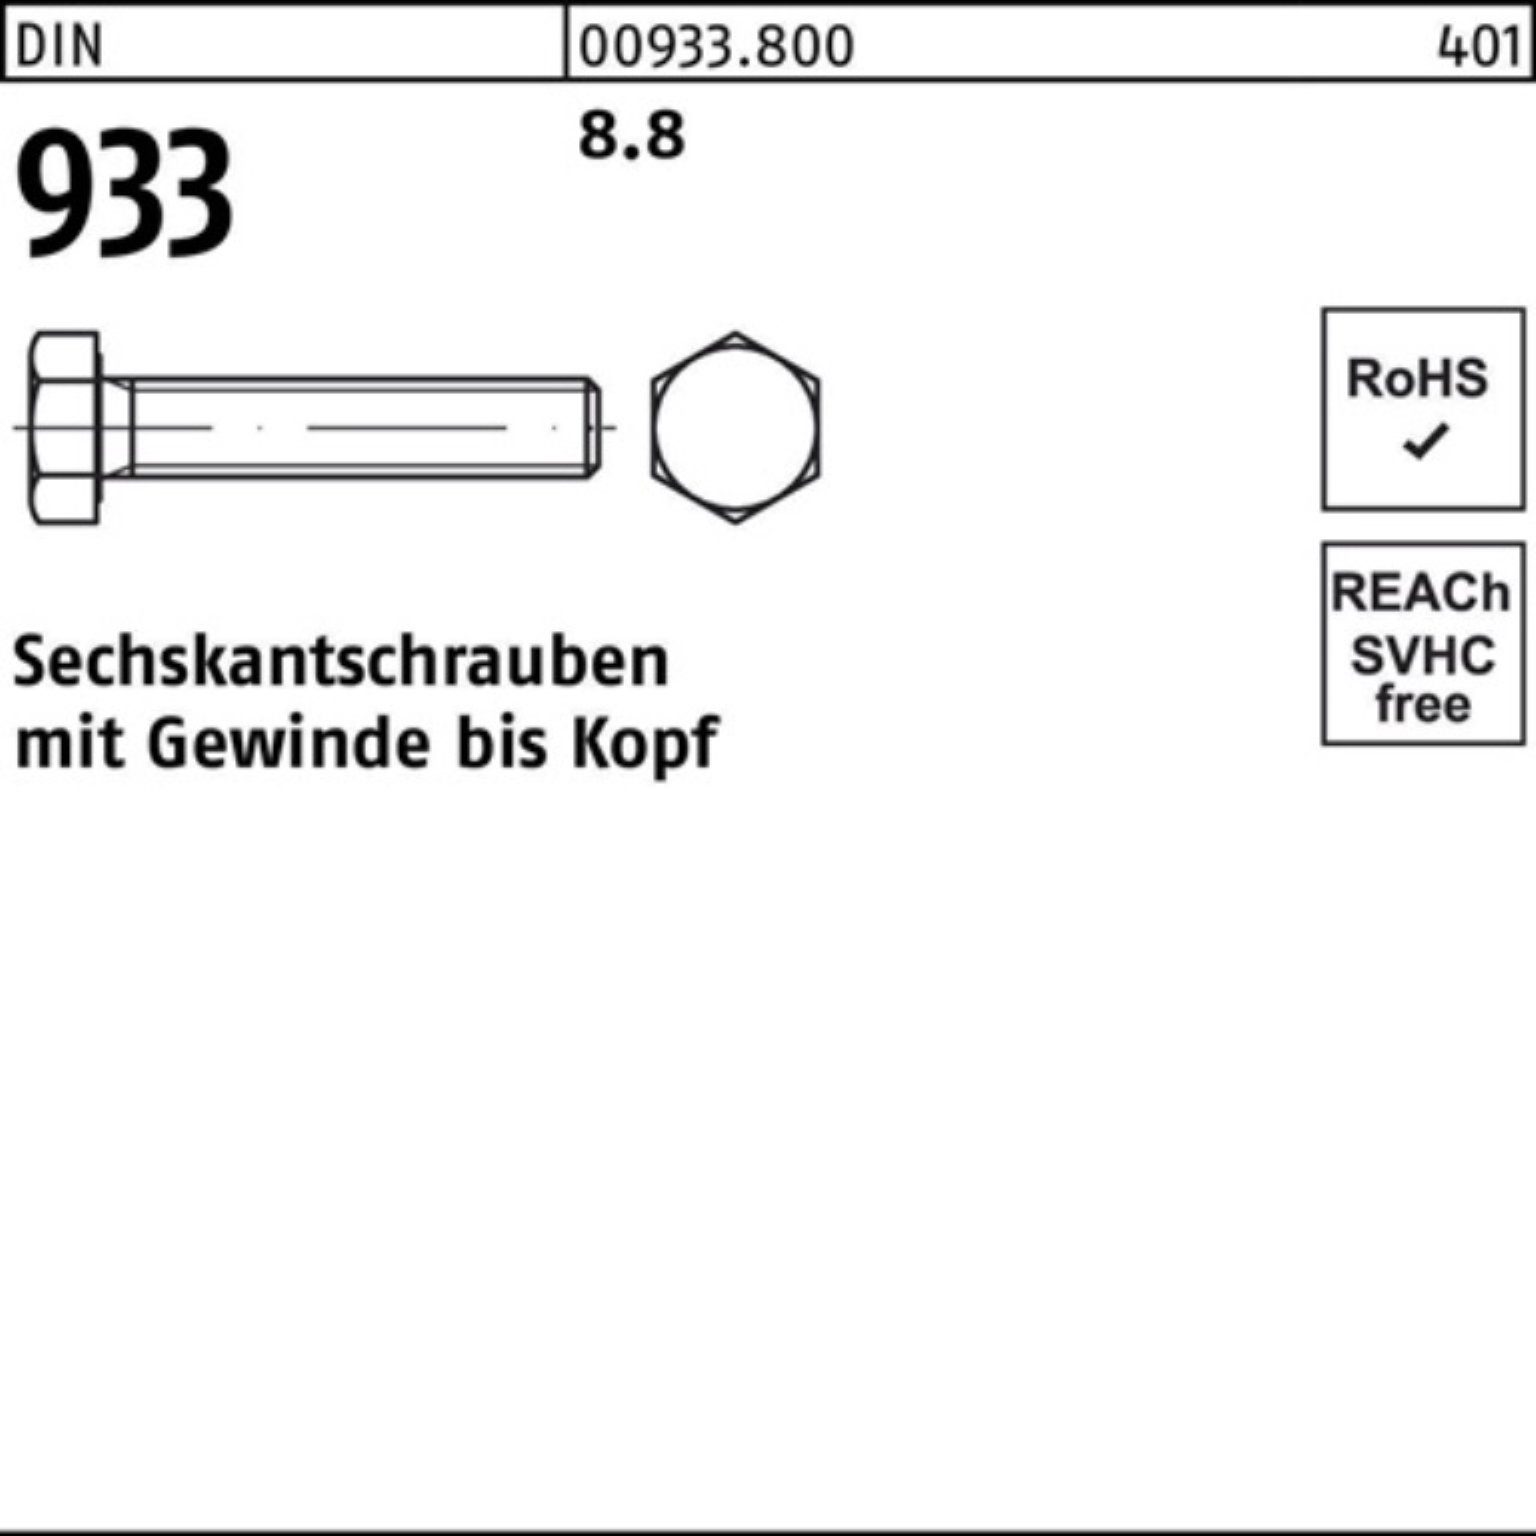 Reyher Sechskantschraube 100er Pack Sechskantschraube 8.8 VG 933 M6x 933 Stück DIN DIN 150 100